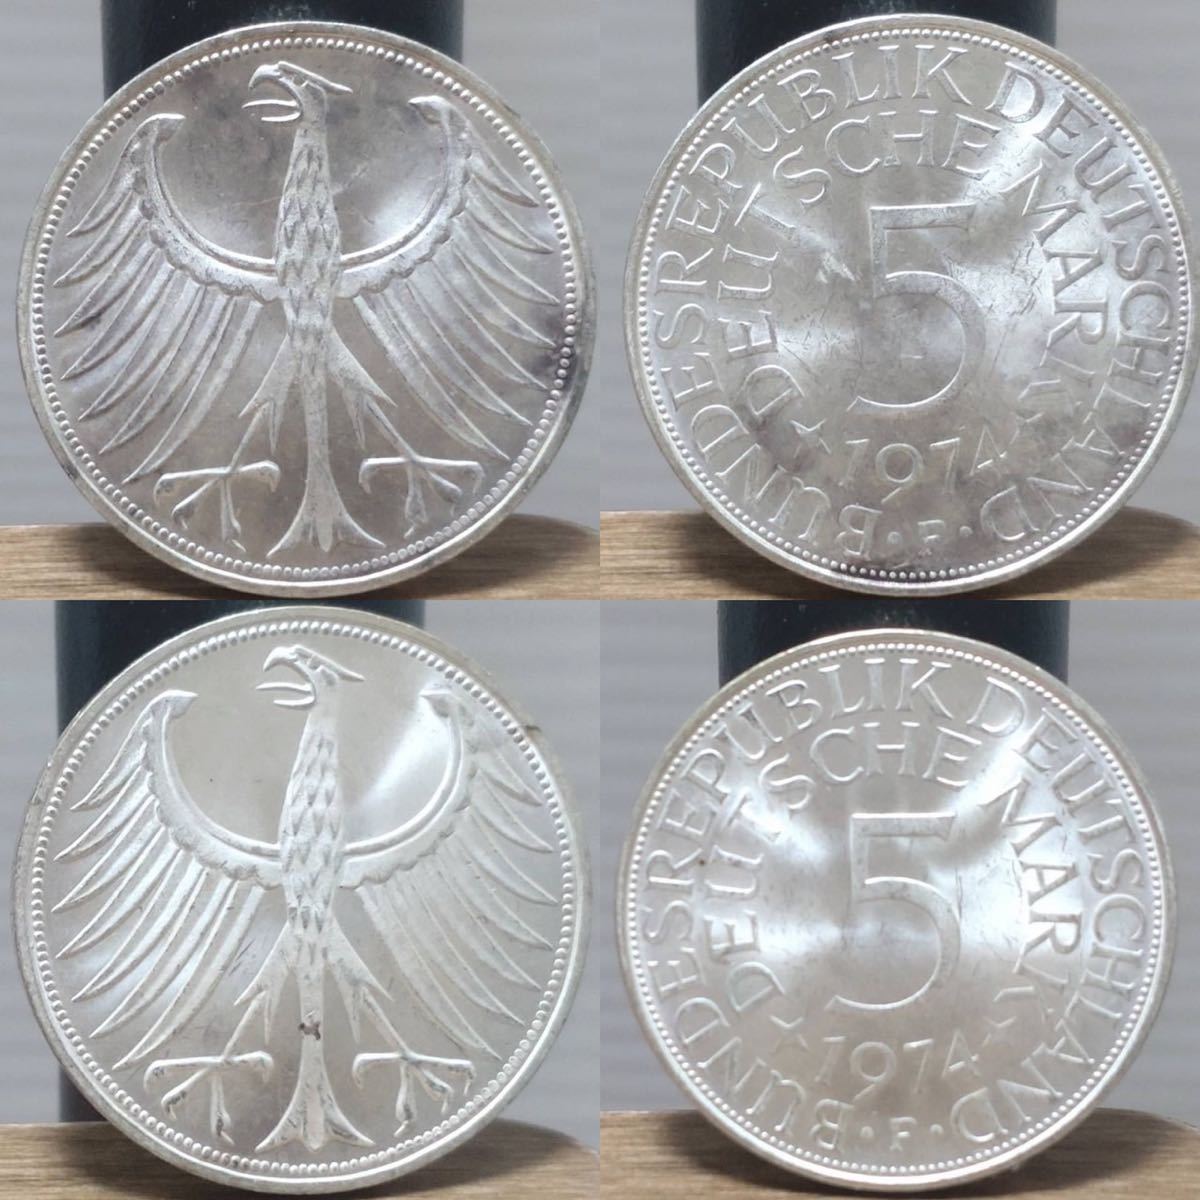 レア 西ドイツ硬貨 www.csu.uy